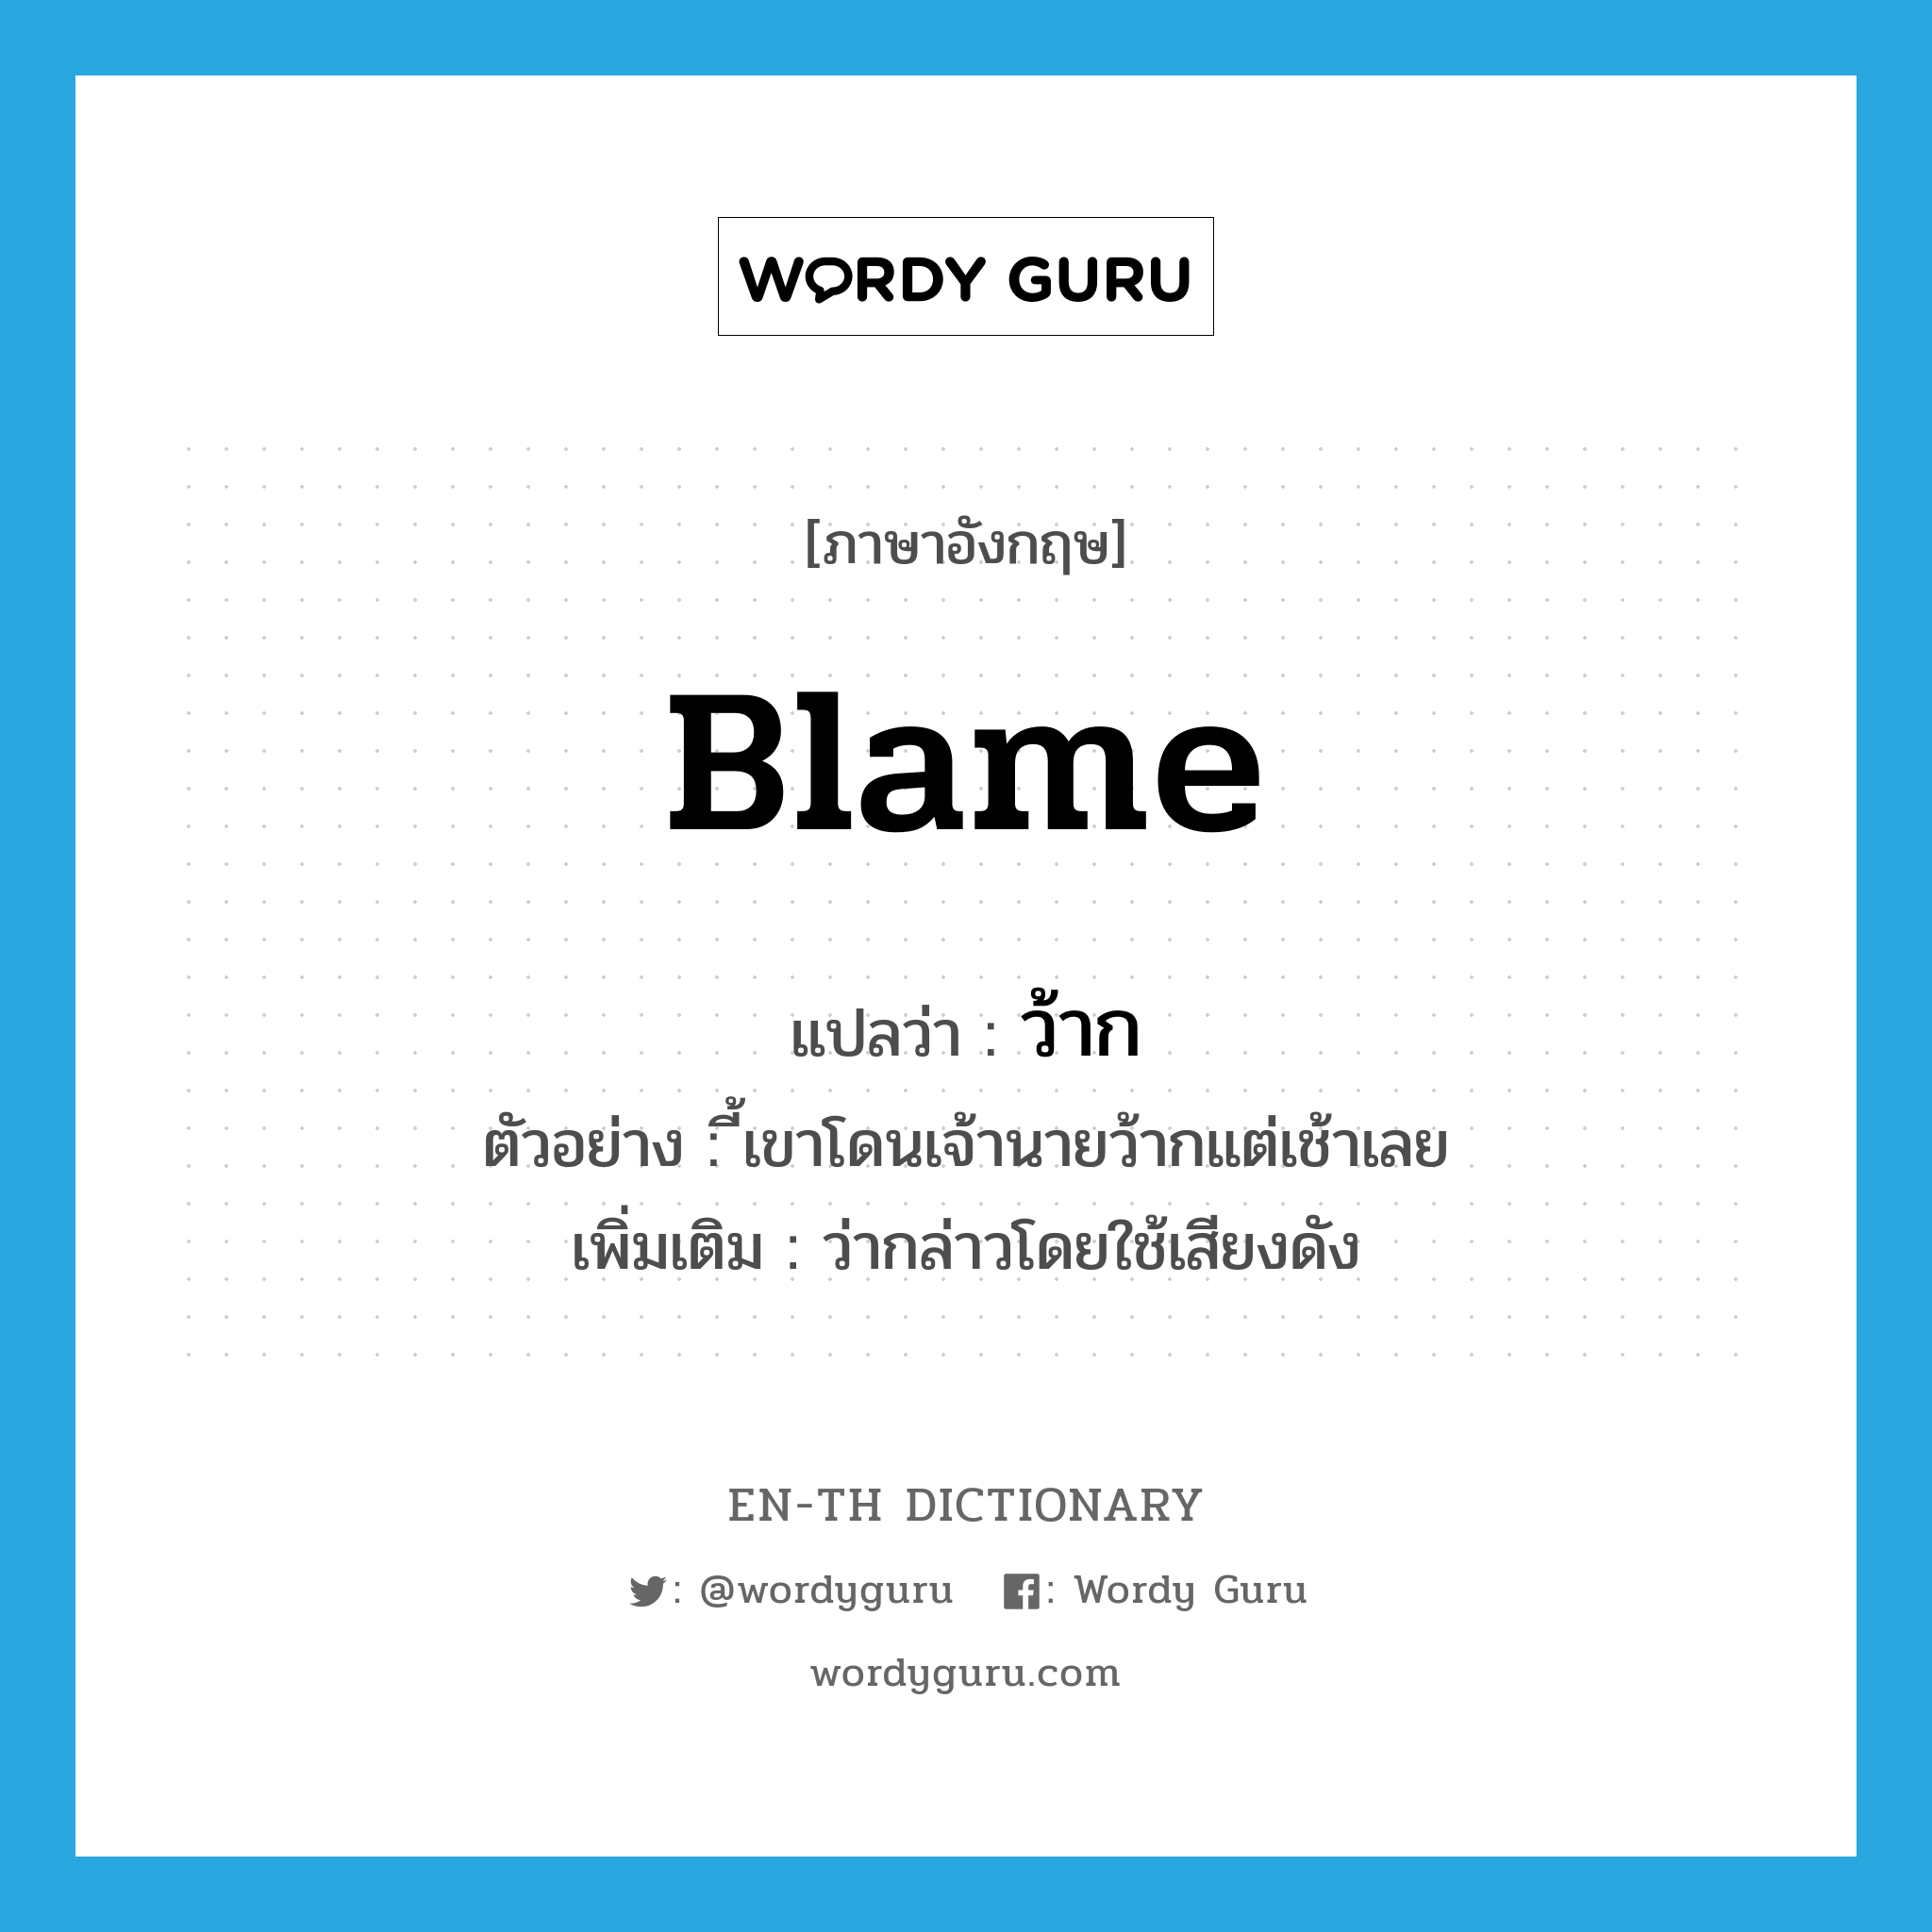 blame แปลว่า?, คำศัพท์ภาษาอังกฤษ blame แปลว่า ว้าก ประเภท V ตัวอย่าง ี้เขาโดนเจ้านายว้ากแต่เช้าเลย เพิ่มเติม ว่ากล่าวโดยใช้เสียงดัง หมวด V